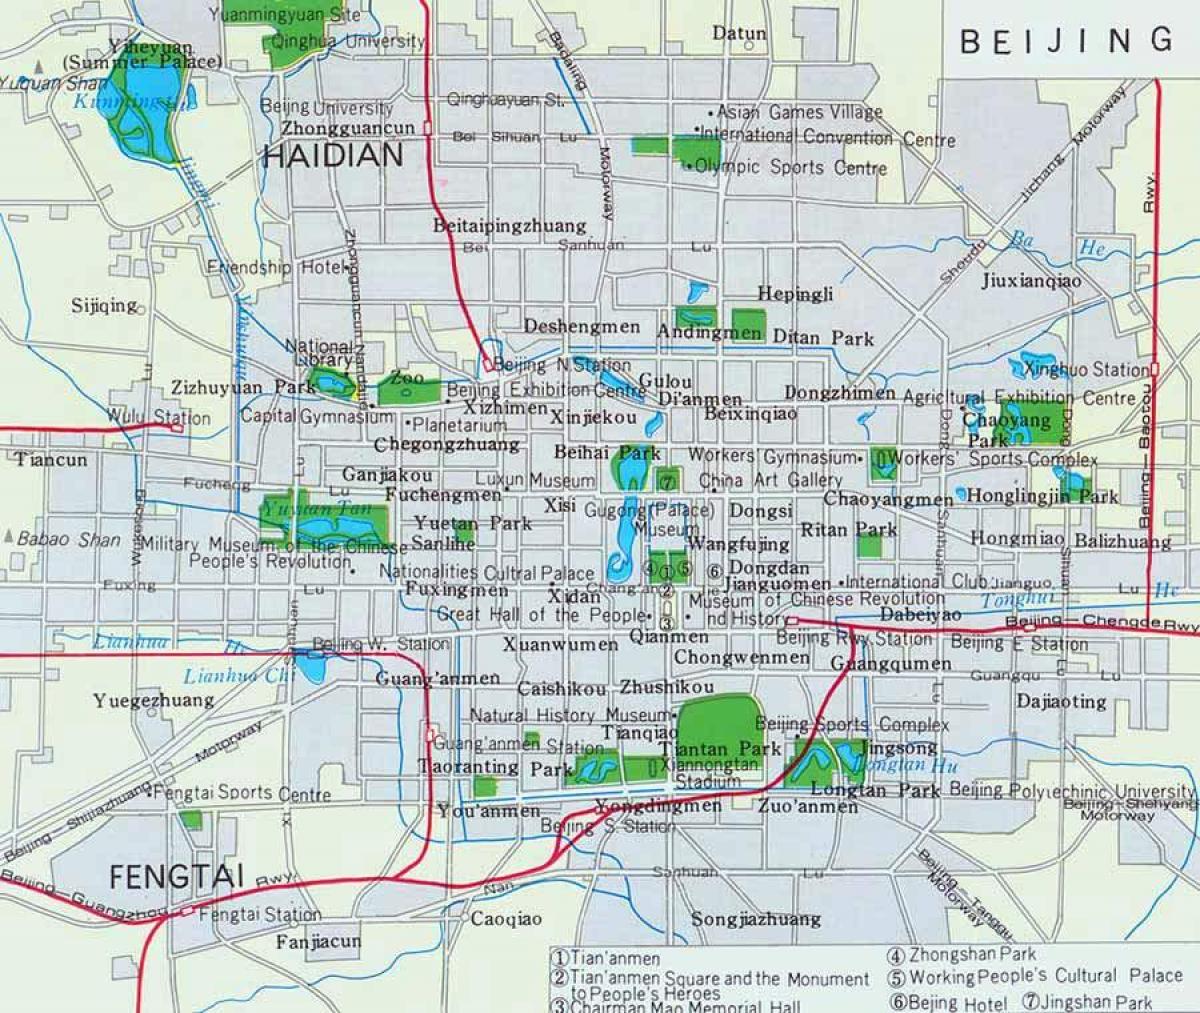 बीजिंग शहर के केंद्र के नक्शे